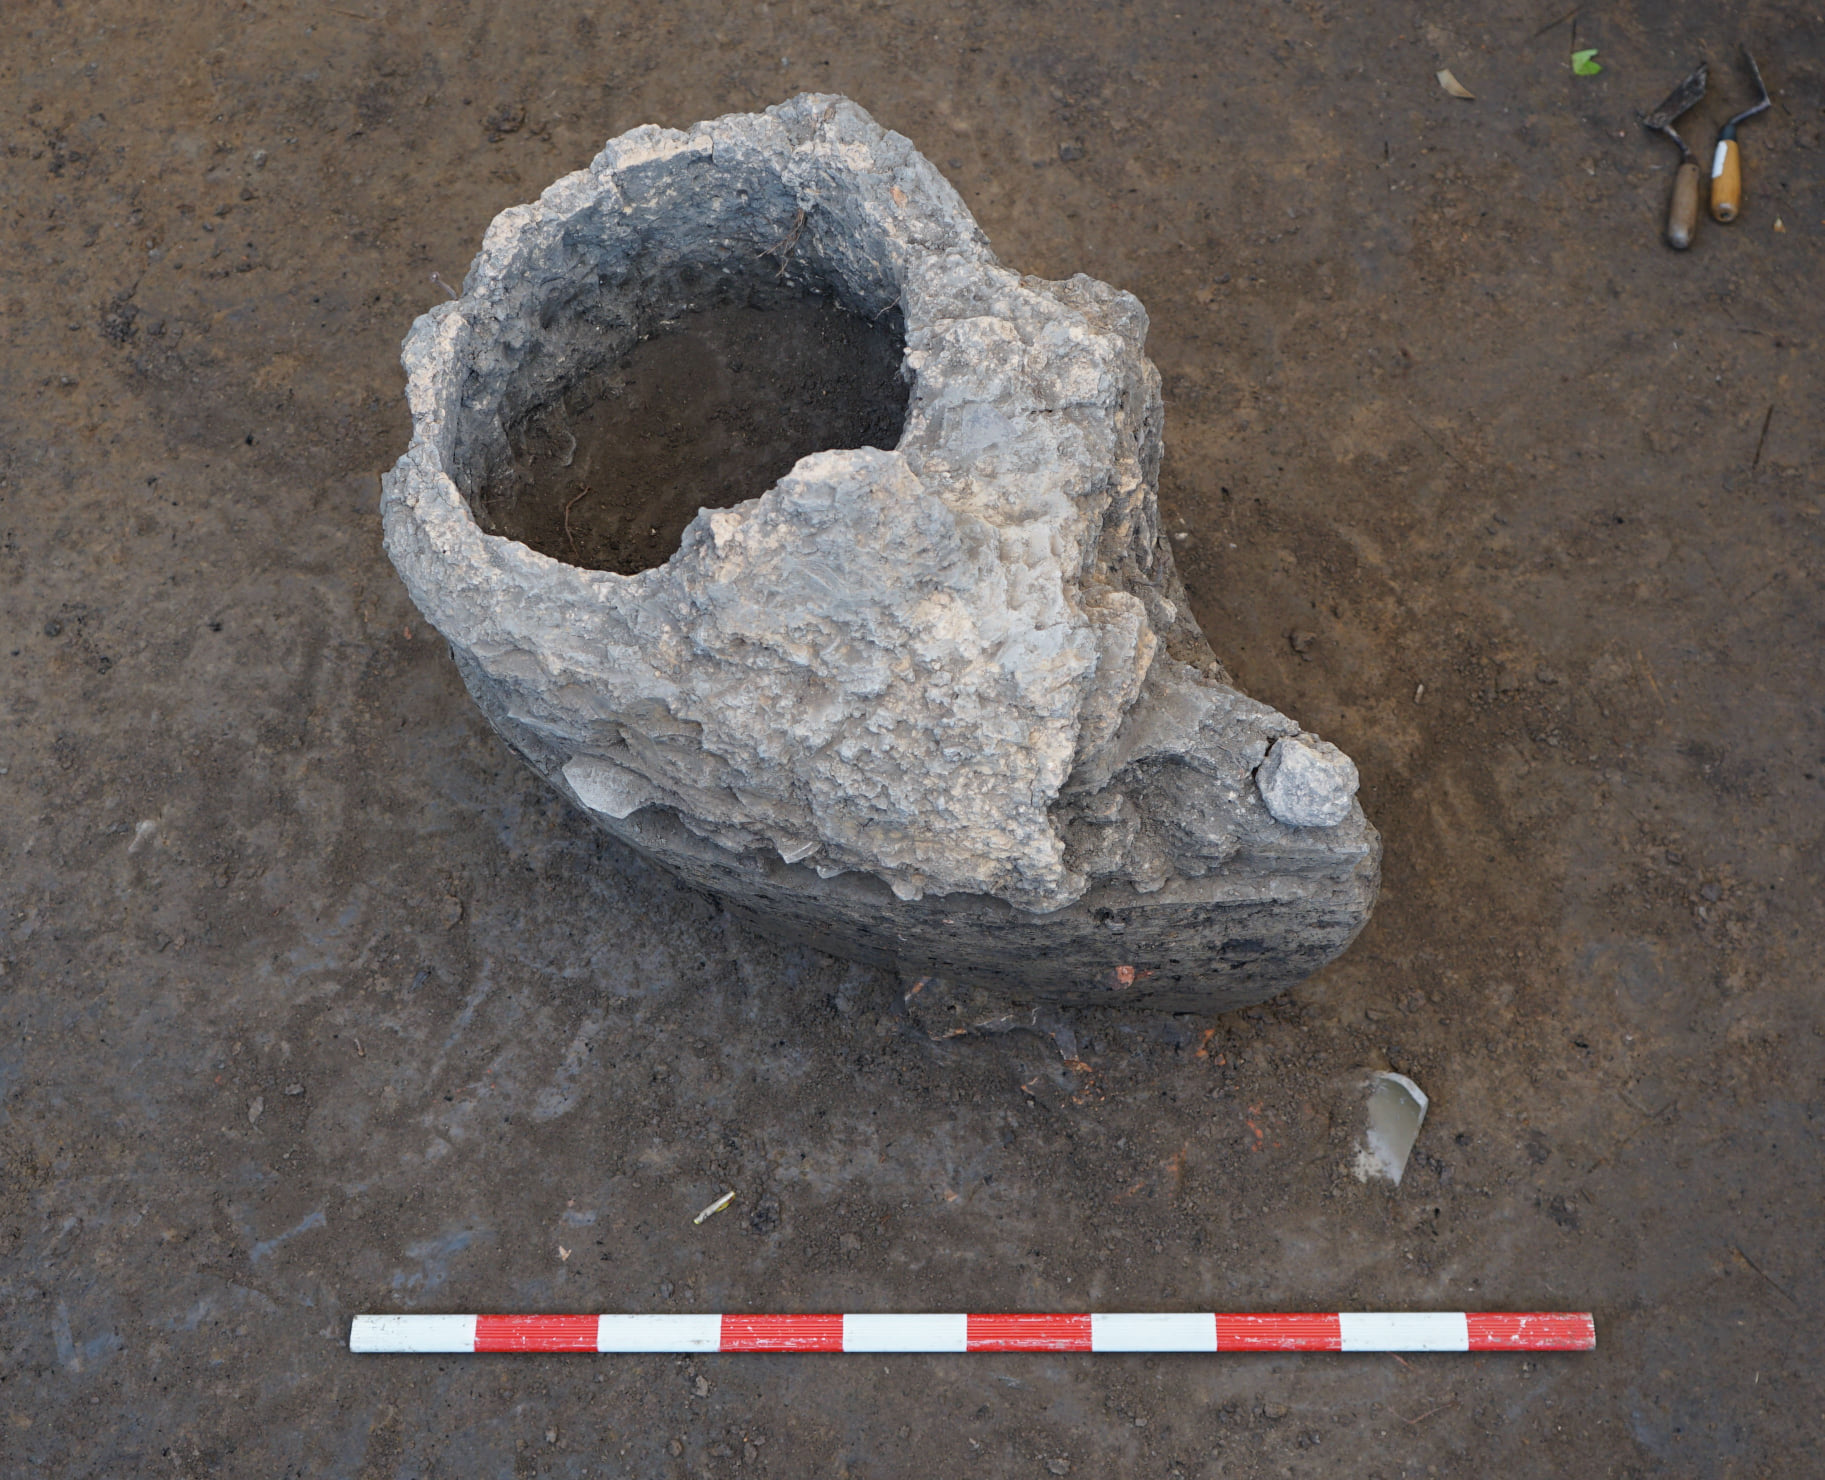 ✦ เตาถลุงเหล็กโบราณ : หลักฐานจากการขุดค้นทางโบราณคดีเมืองสรรคบุรี จังหวัดชัยนาท ✦